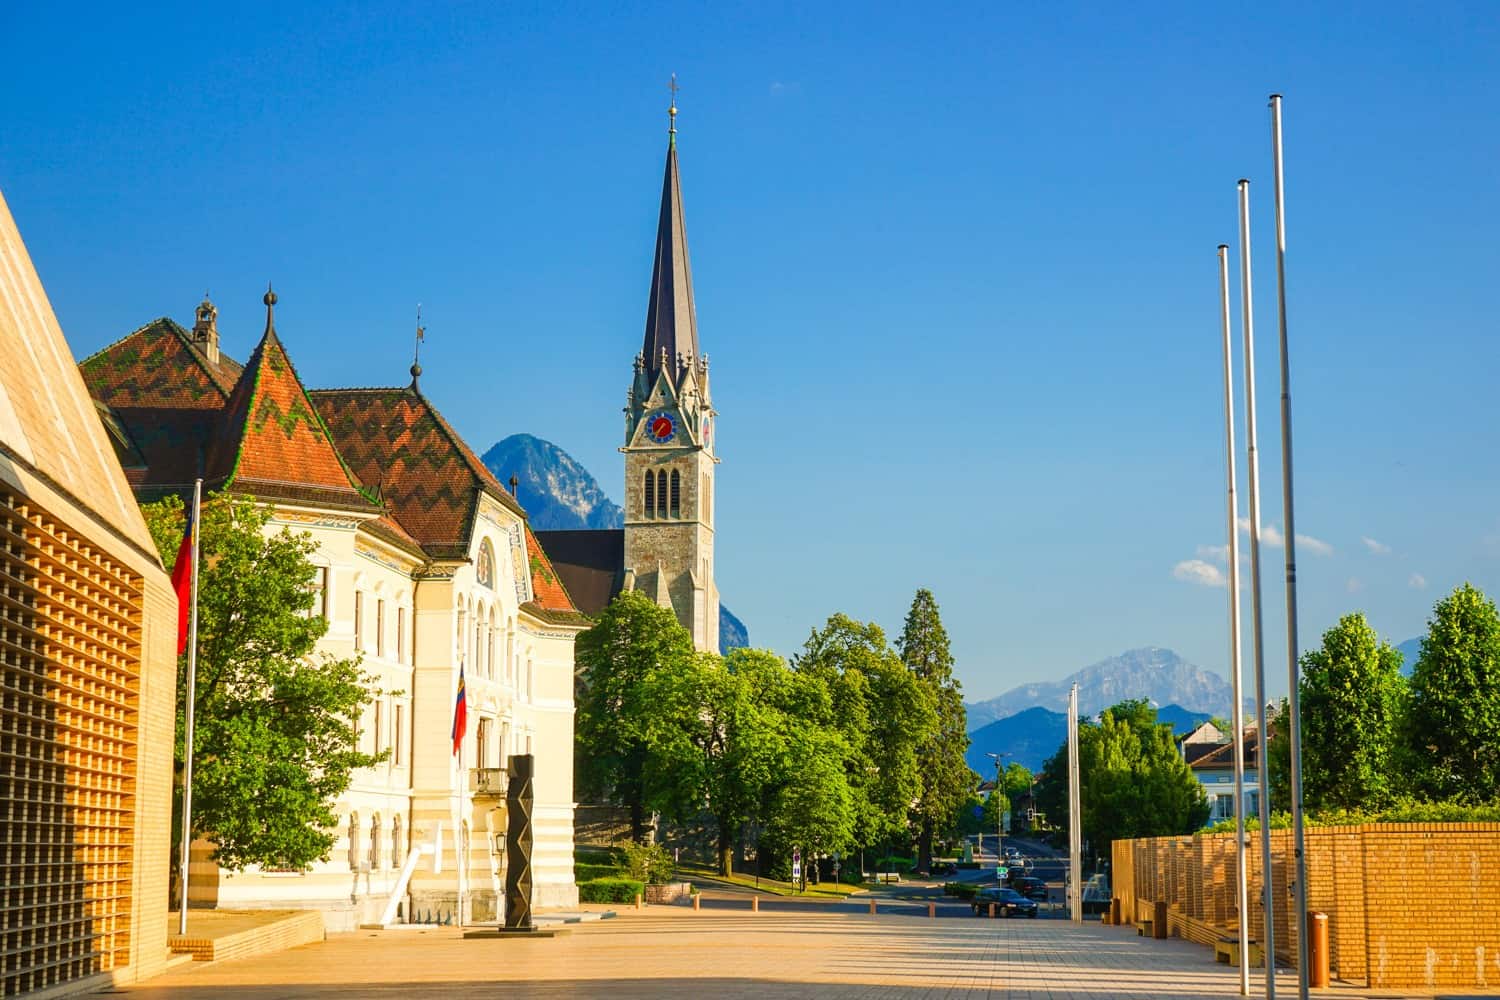 Street in Vaduz, Liechtenstein